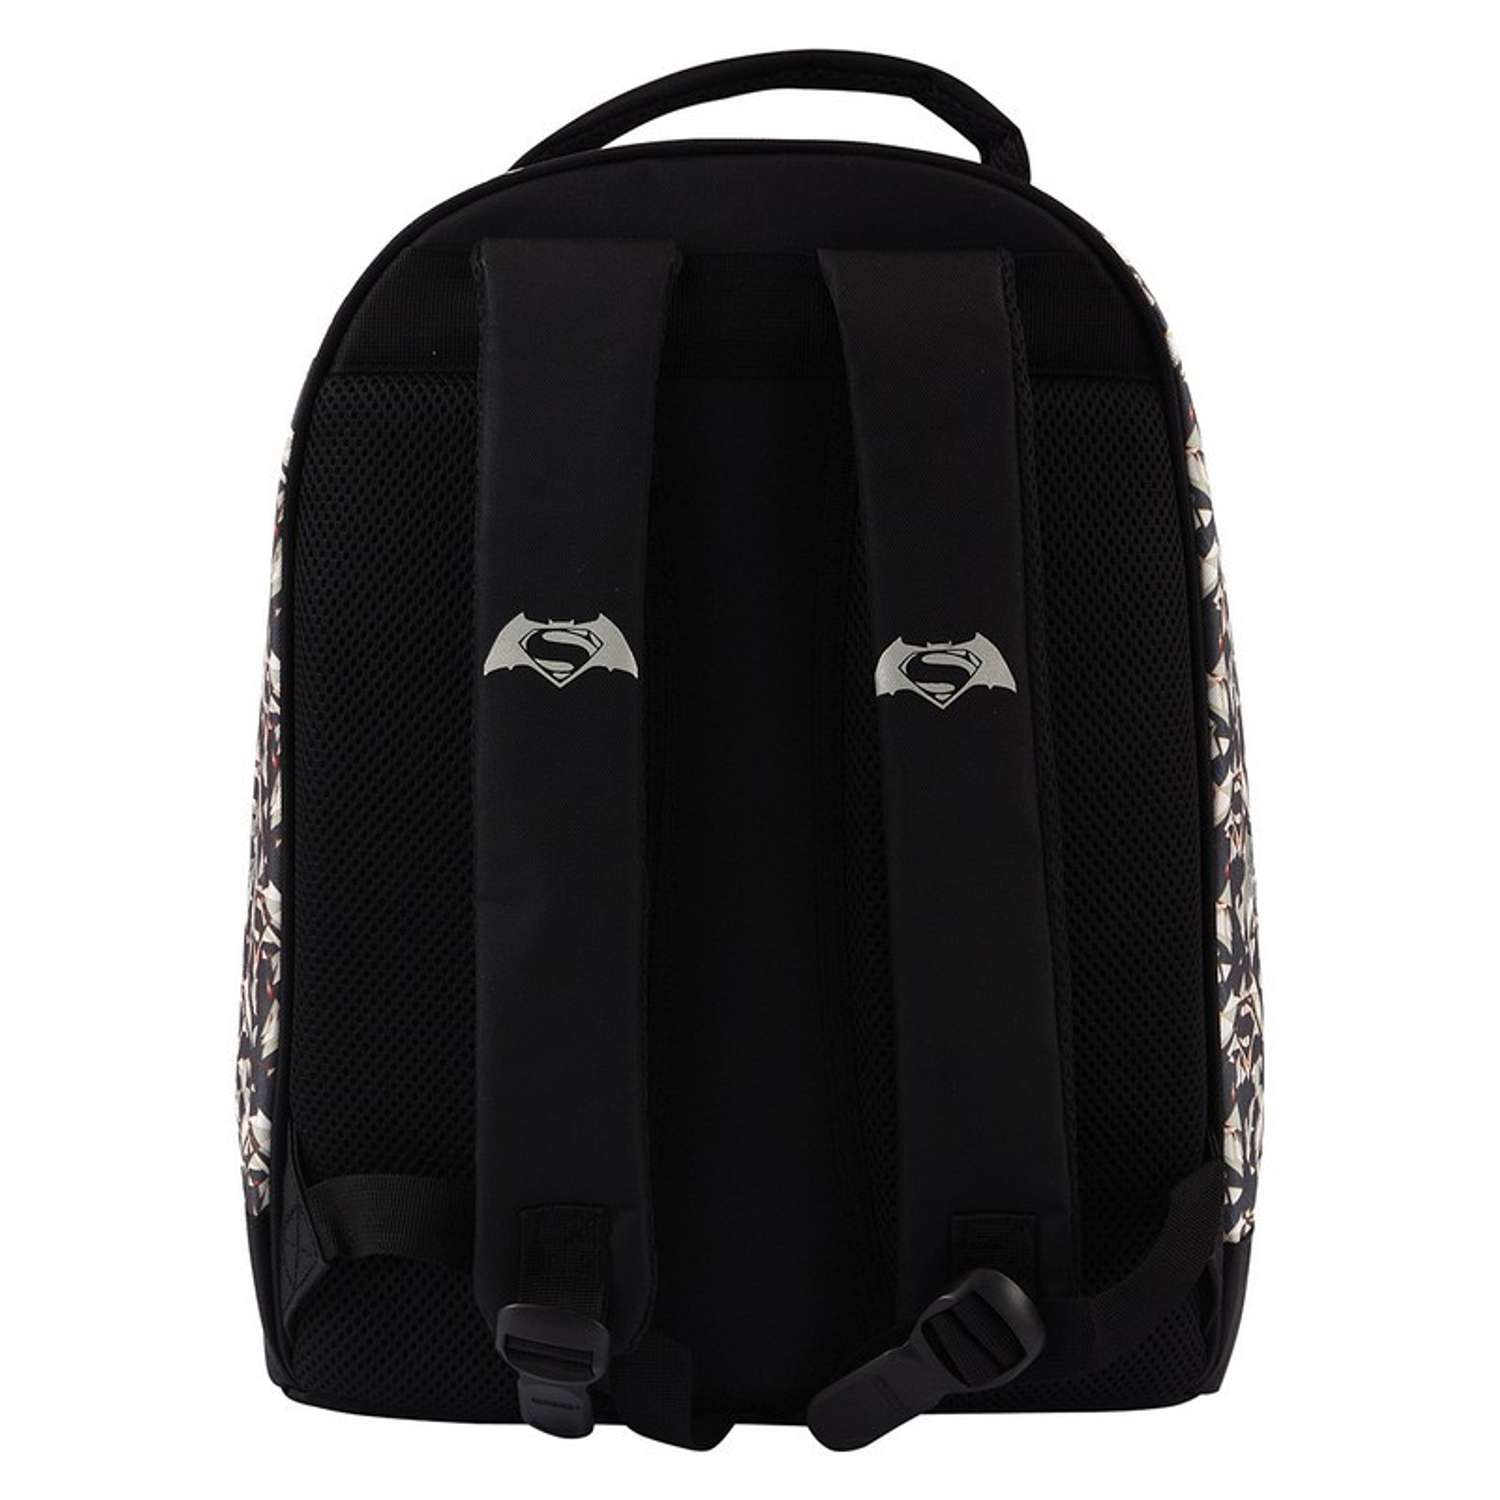 Рюкзак школьный Proff для мальчика (черный) - фото 5